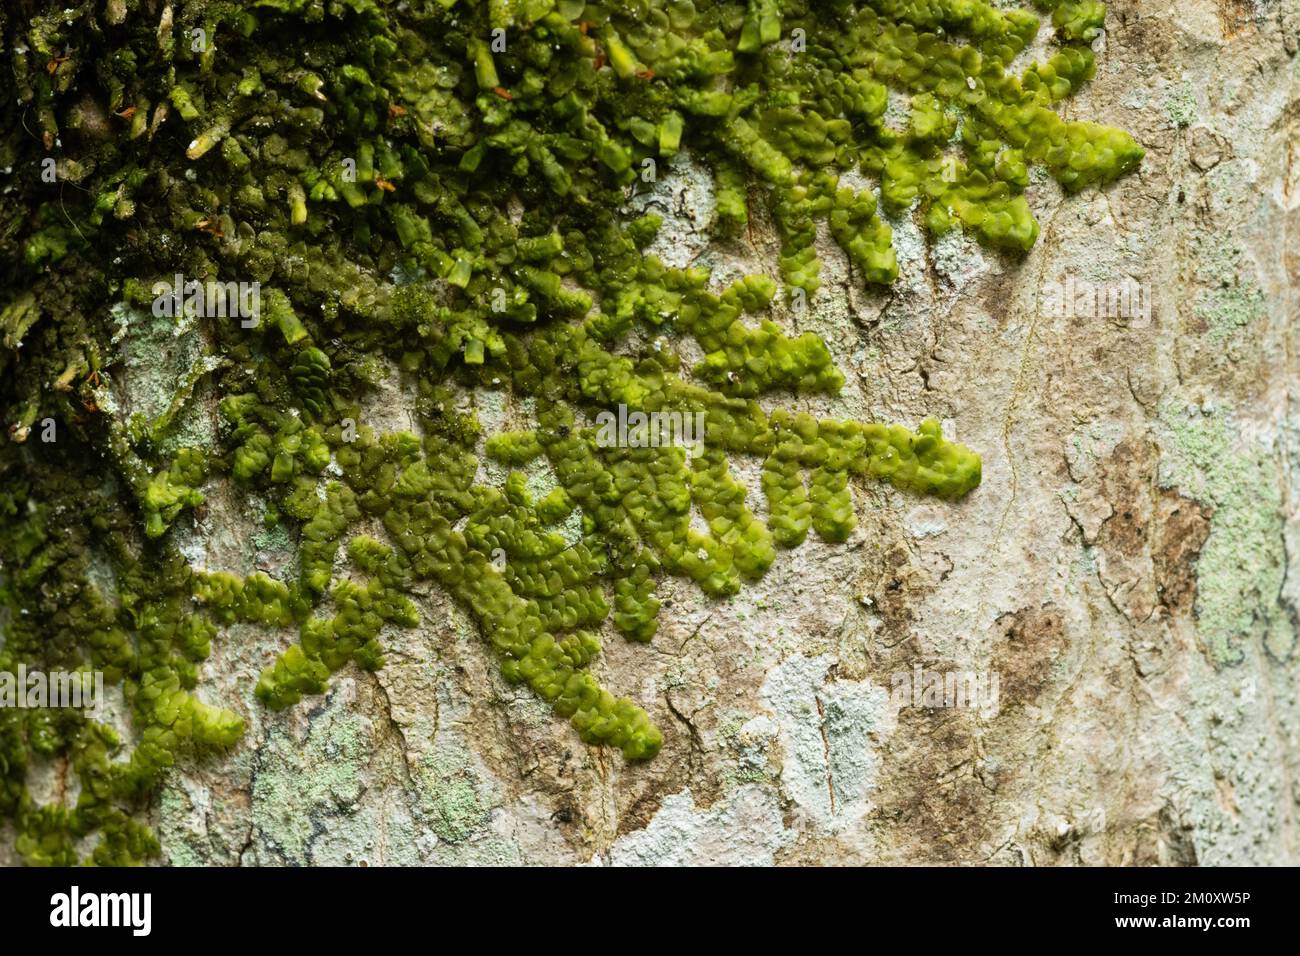 Nahaufnahme von sogar Skalewürzen, die auf einem Baumstamm in einem lettischen Wald in Europa wachsen Stockfoto